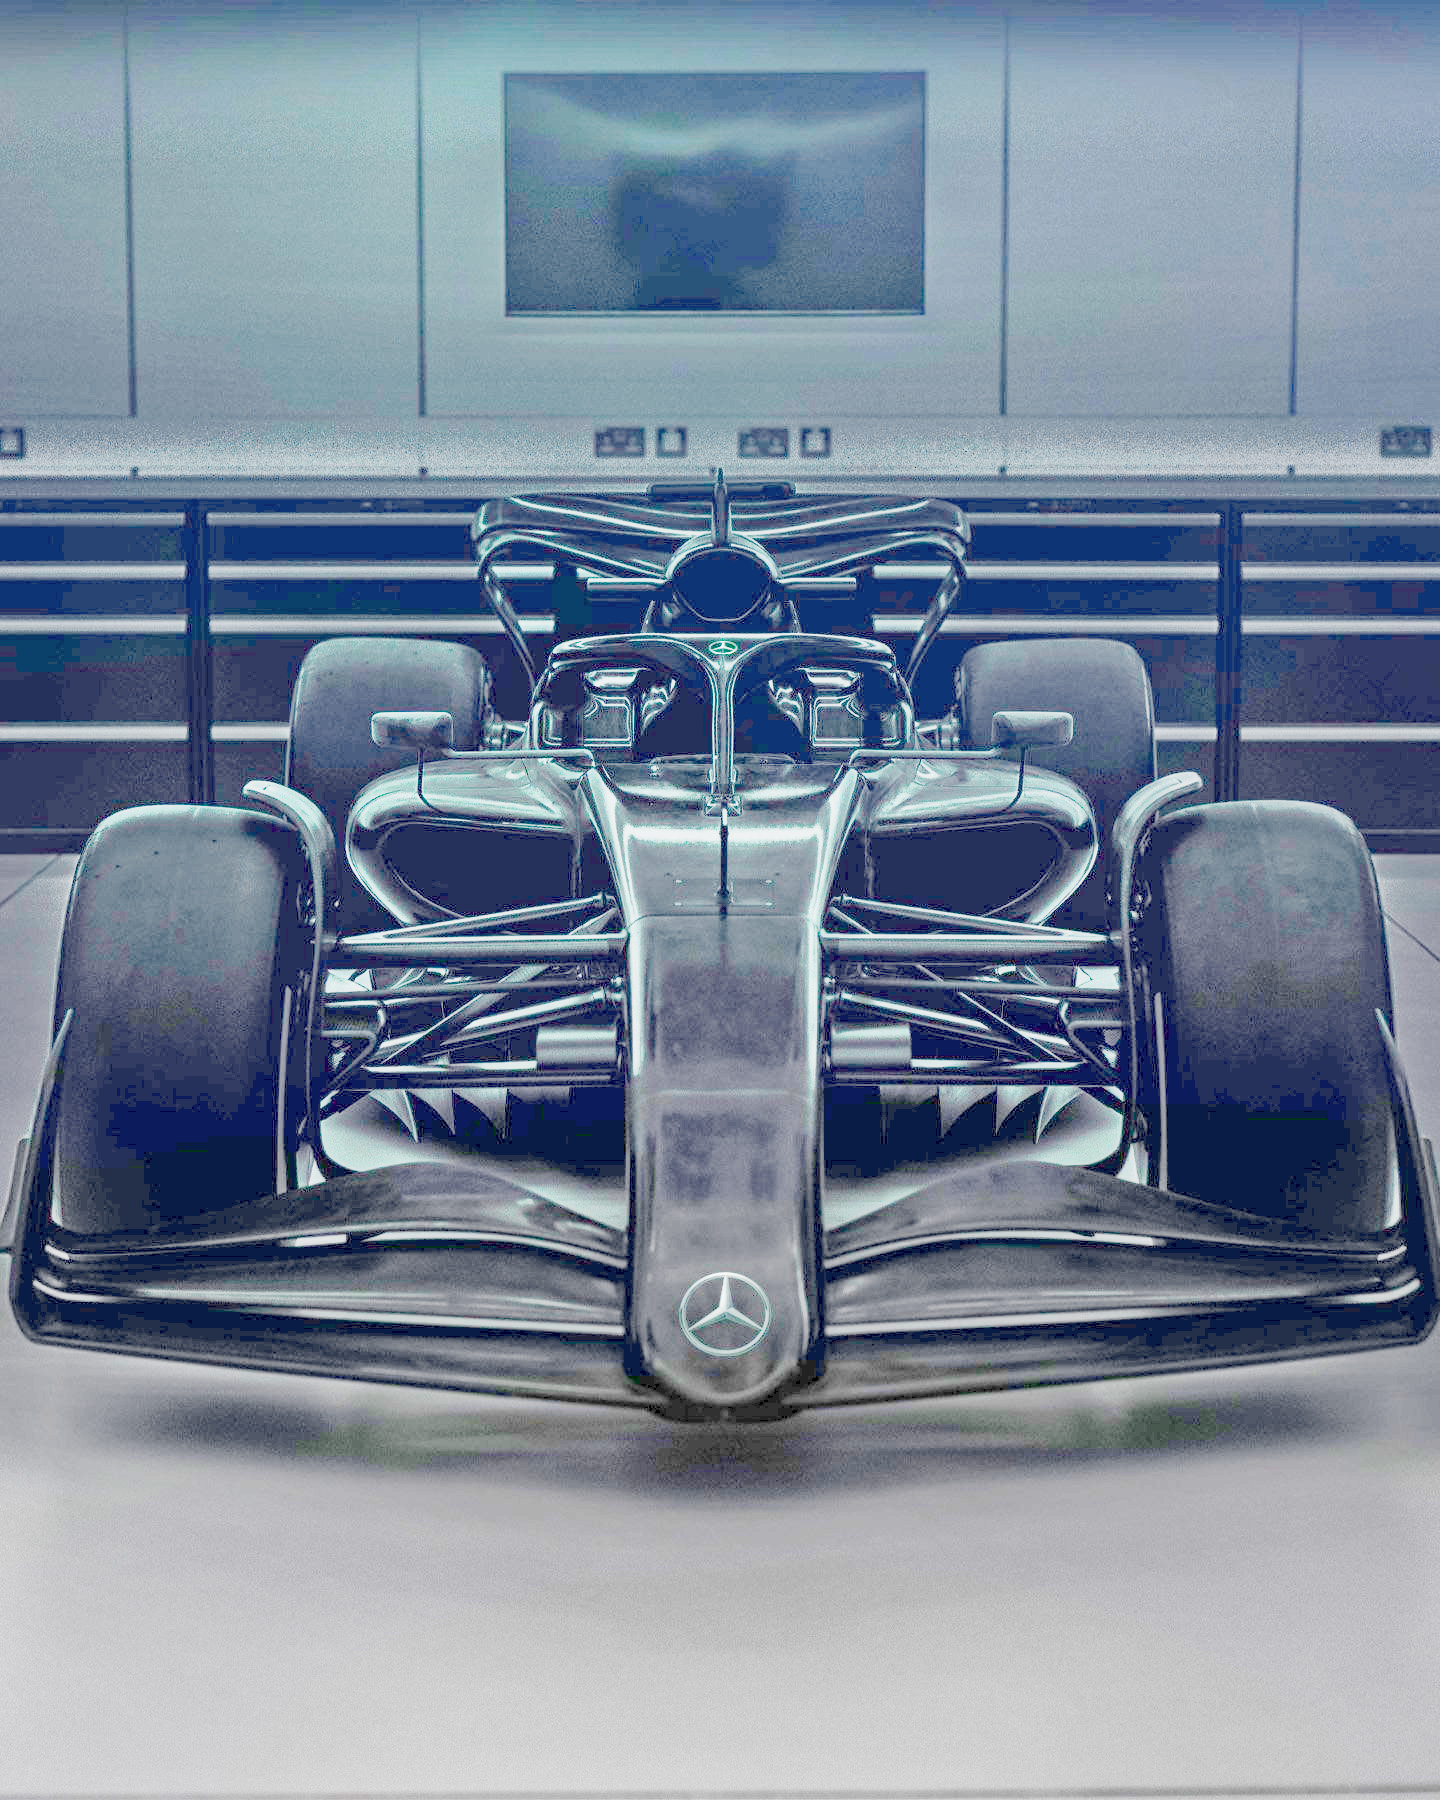 Mercedes F1 accenna la monoposto 2022 nei social.